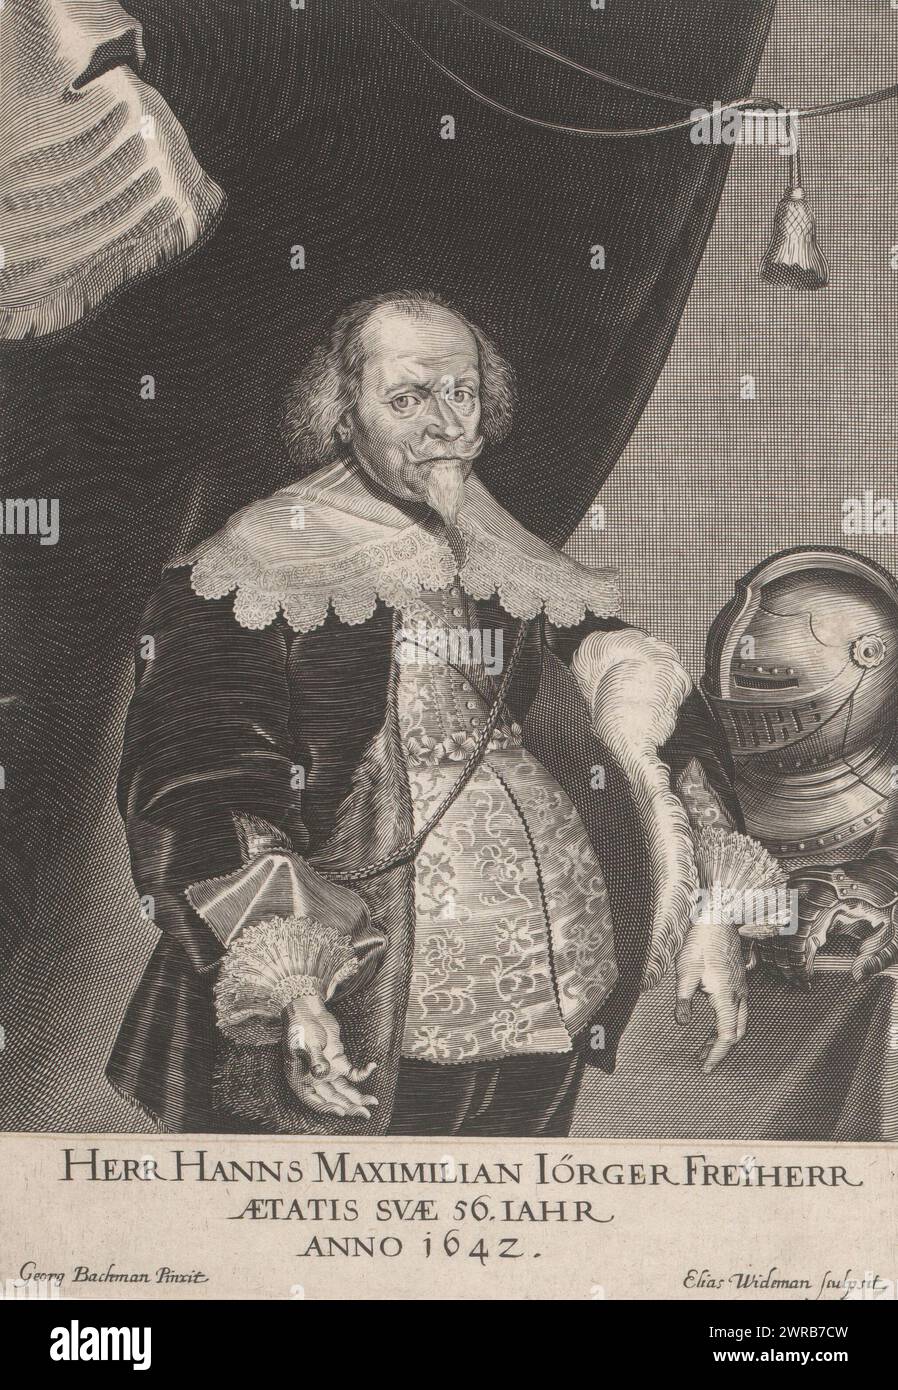 Portrait de Hans Maximilian Jörger von Tollet, imprimeur : Elias Widemann, après peinture par : Georg Bachmann, Autriche, (possiblement), 1642, papier, gravure, hauteur 235 mm × largeur 168 mm, impression Banque D'Images